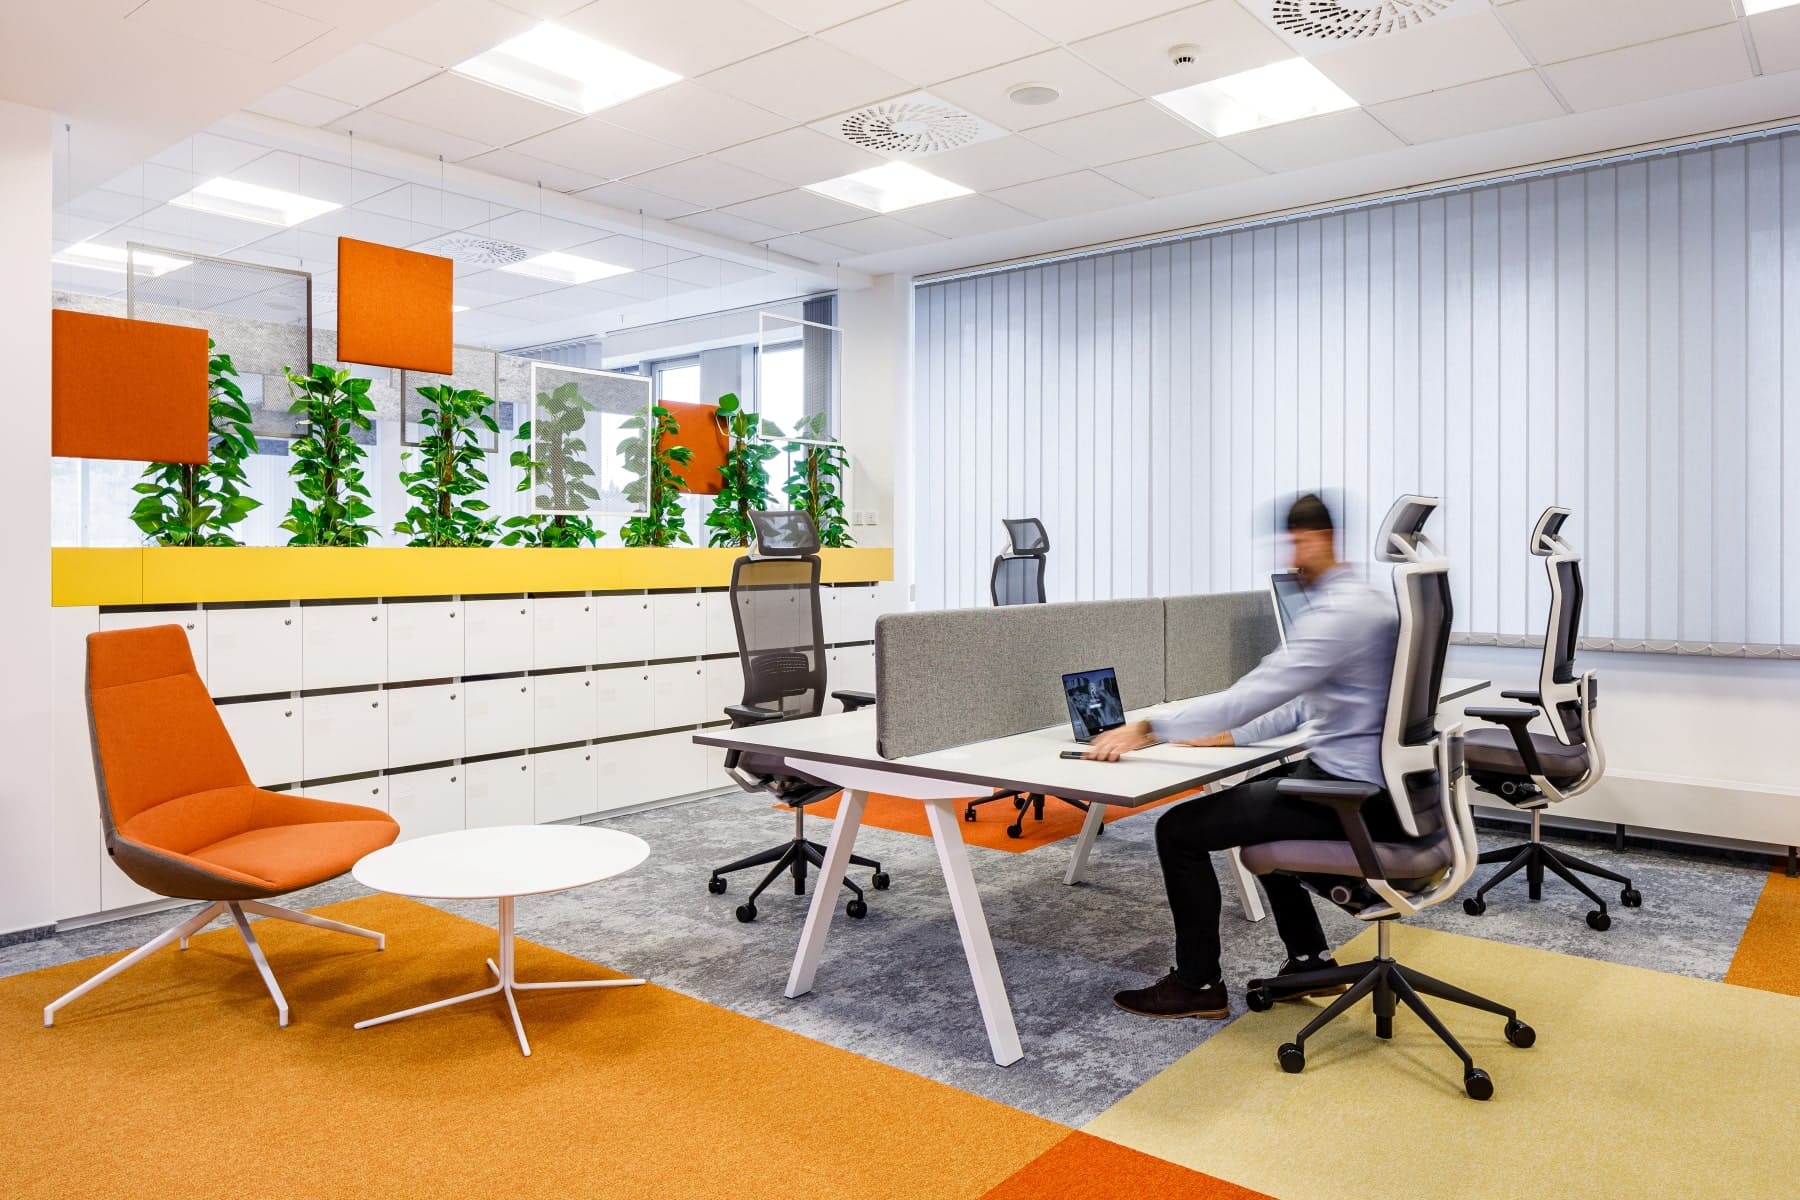 Muebles de oficina para espacios reducidos. ¿Cómo elegirlos?